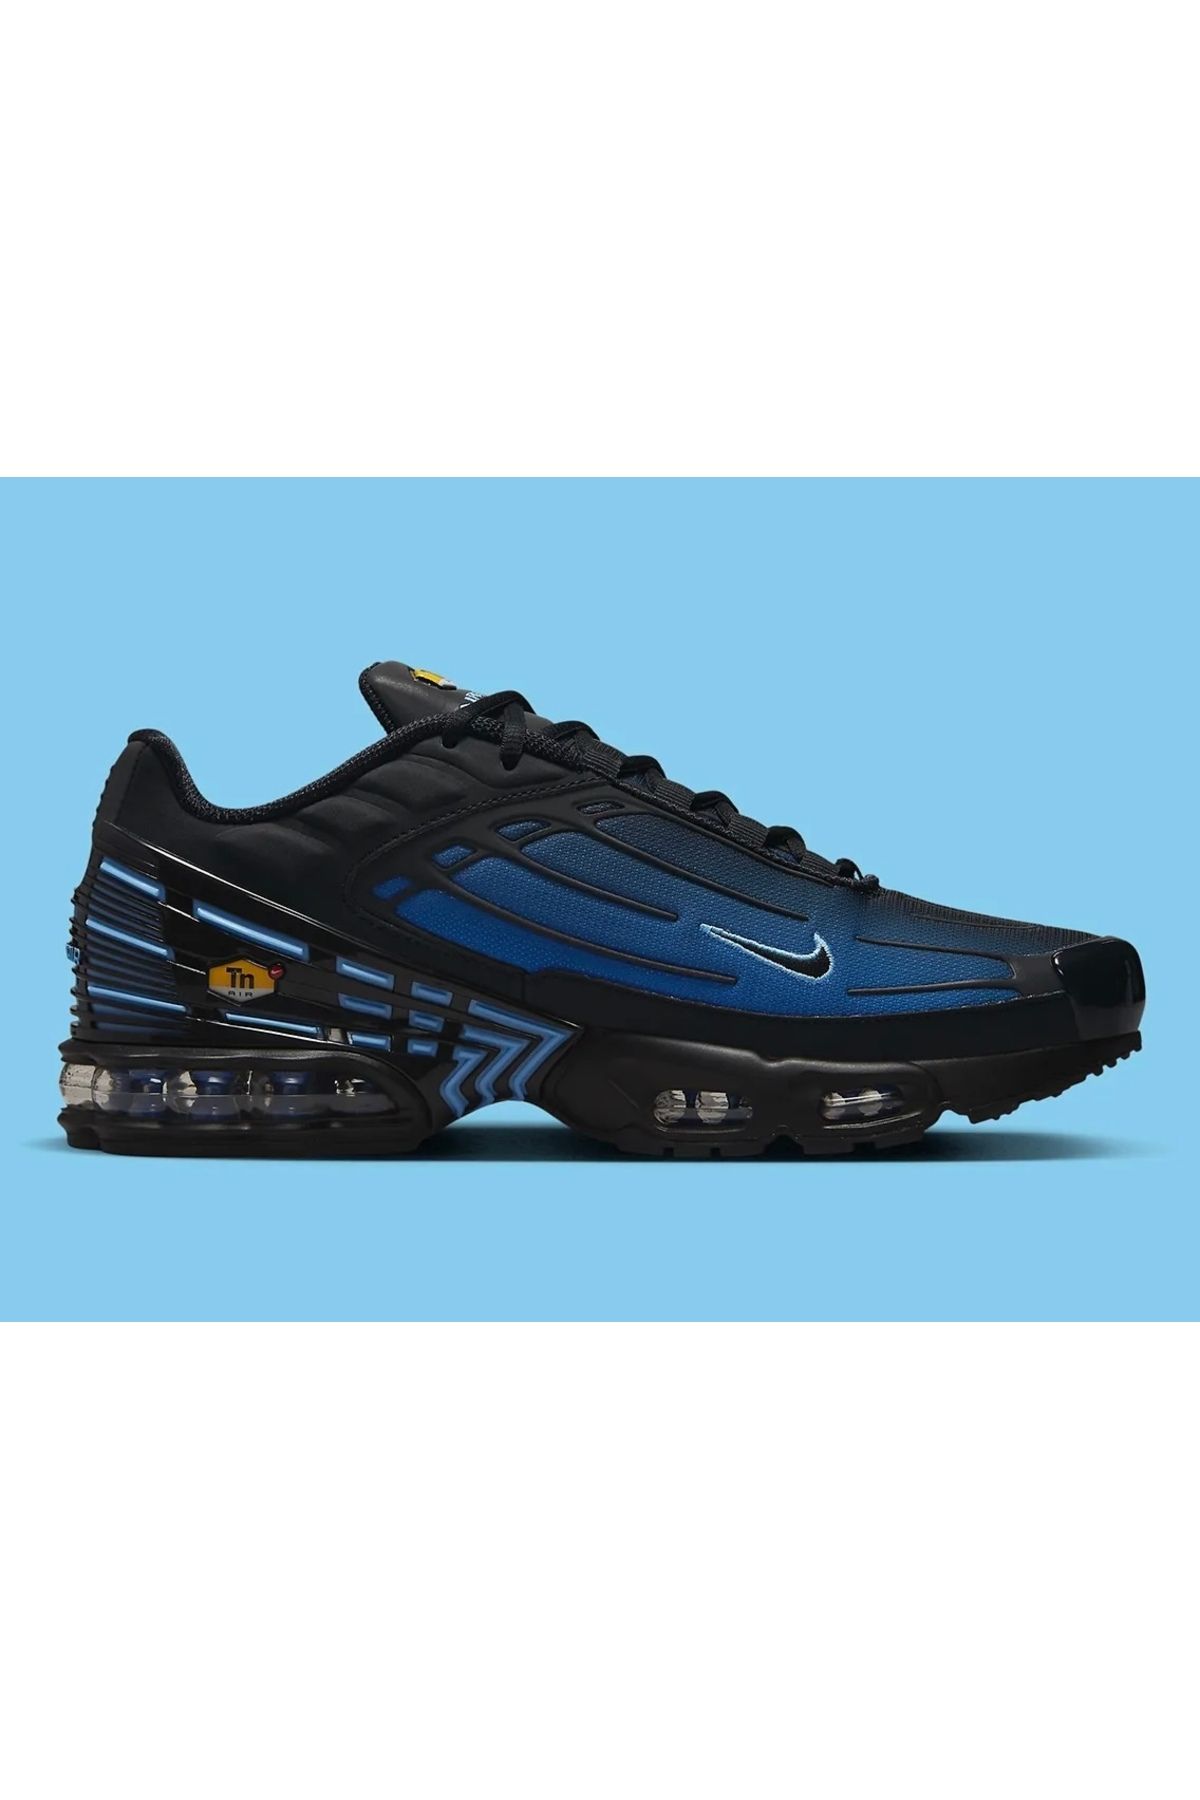 Nike Air Max Plus 3 TN Black Blue Gradient Erkek Spor Ayakkabı Sneaker